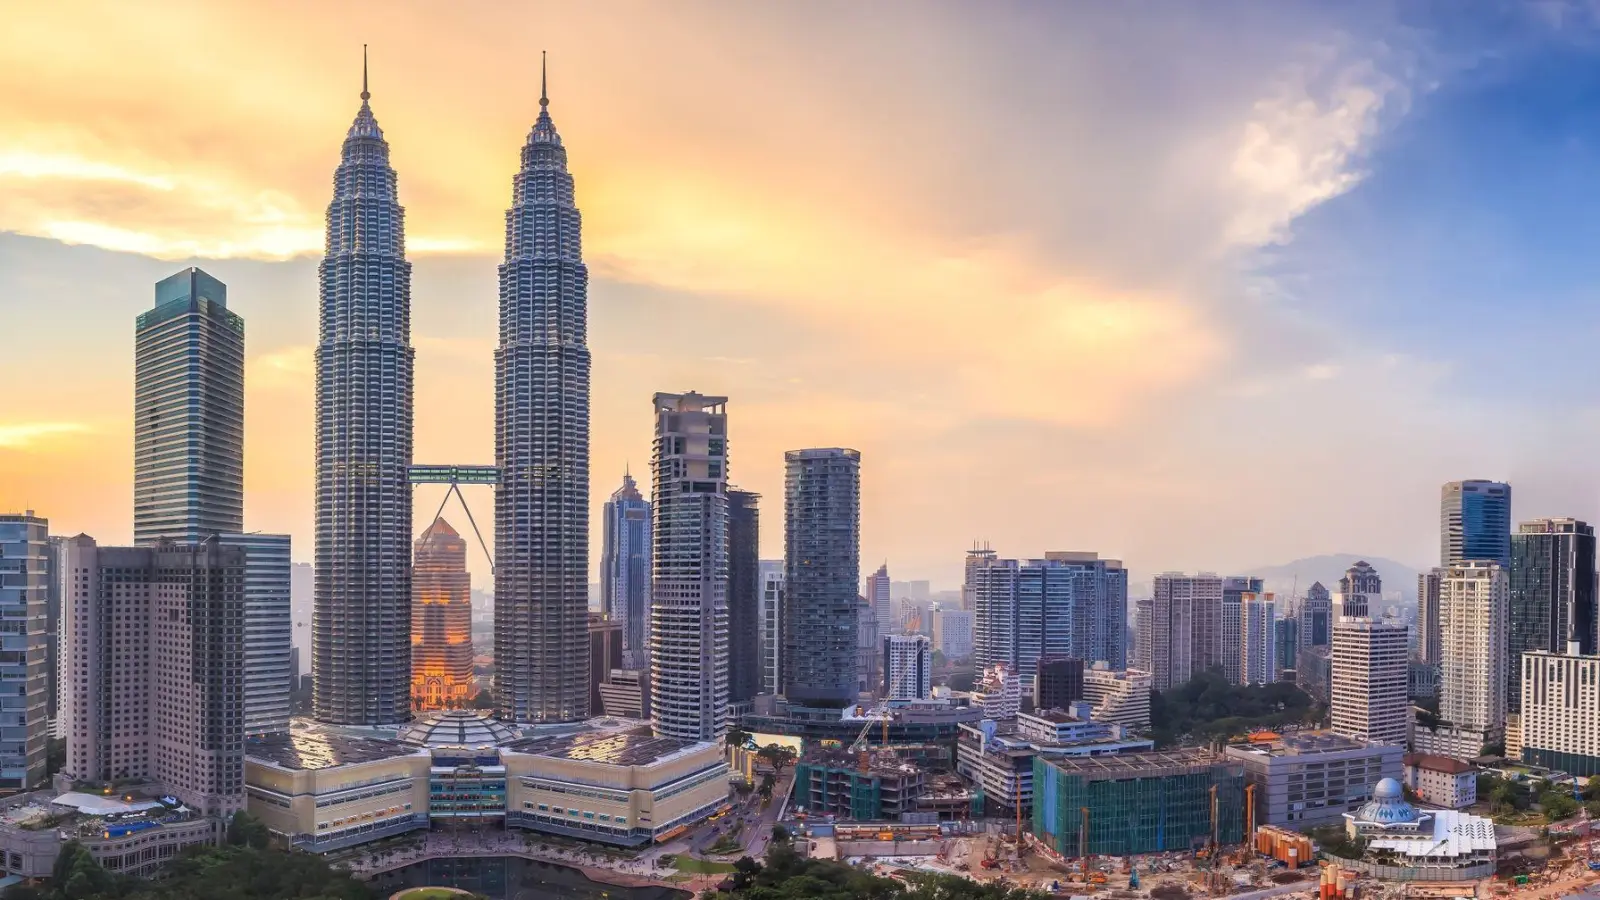 Panoramablick vom KL Tower: Von dort bietet sich die beste Aussicht auf die Skyline Kuala Lumpurs mit den berühmten Petronas Towers. (Foto: Wasin Pummarin/Tourism Malaysia/dpa-tmn)